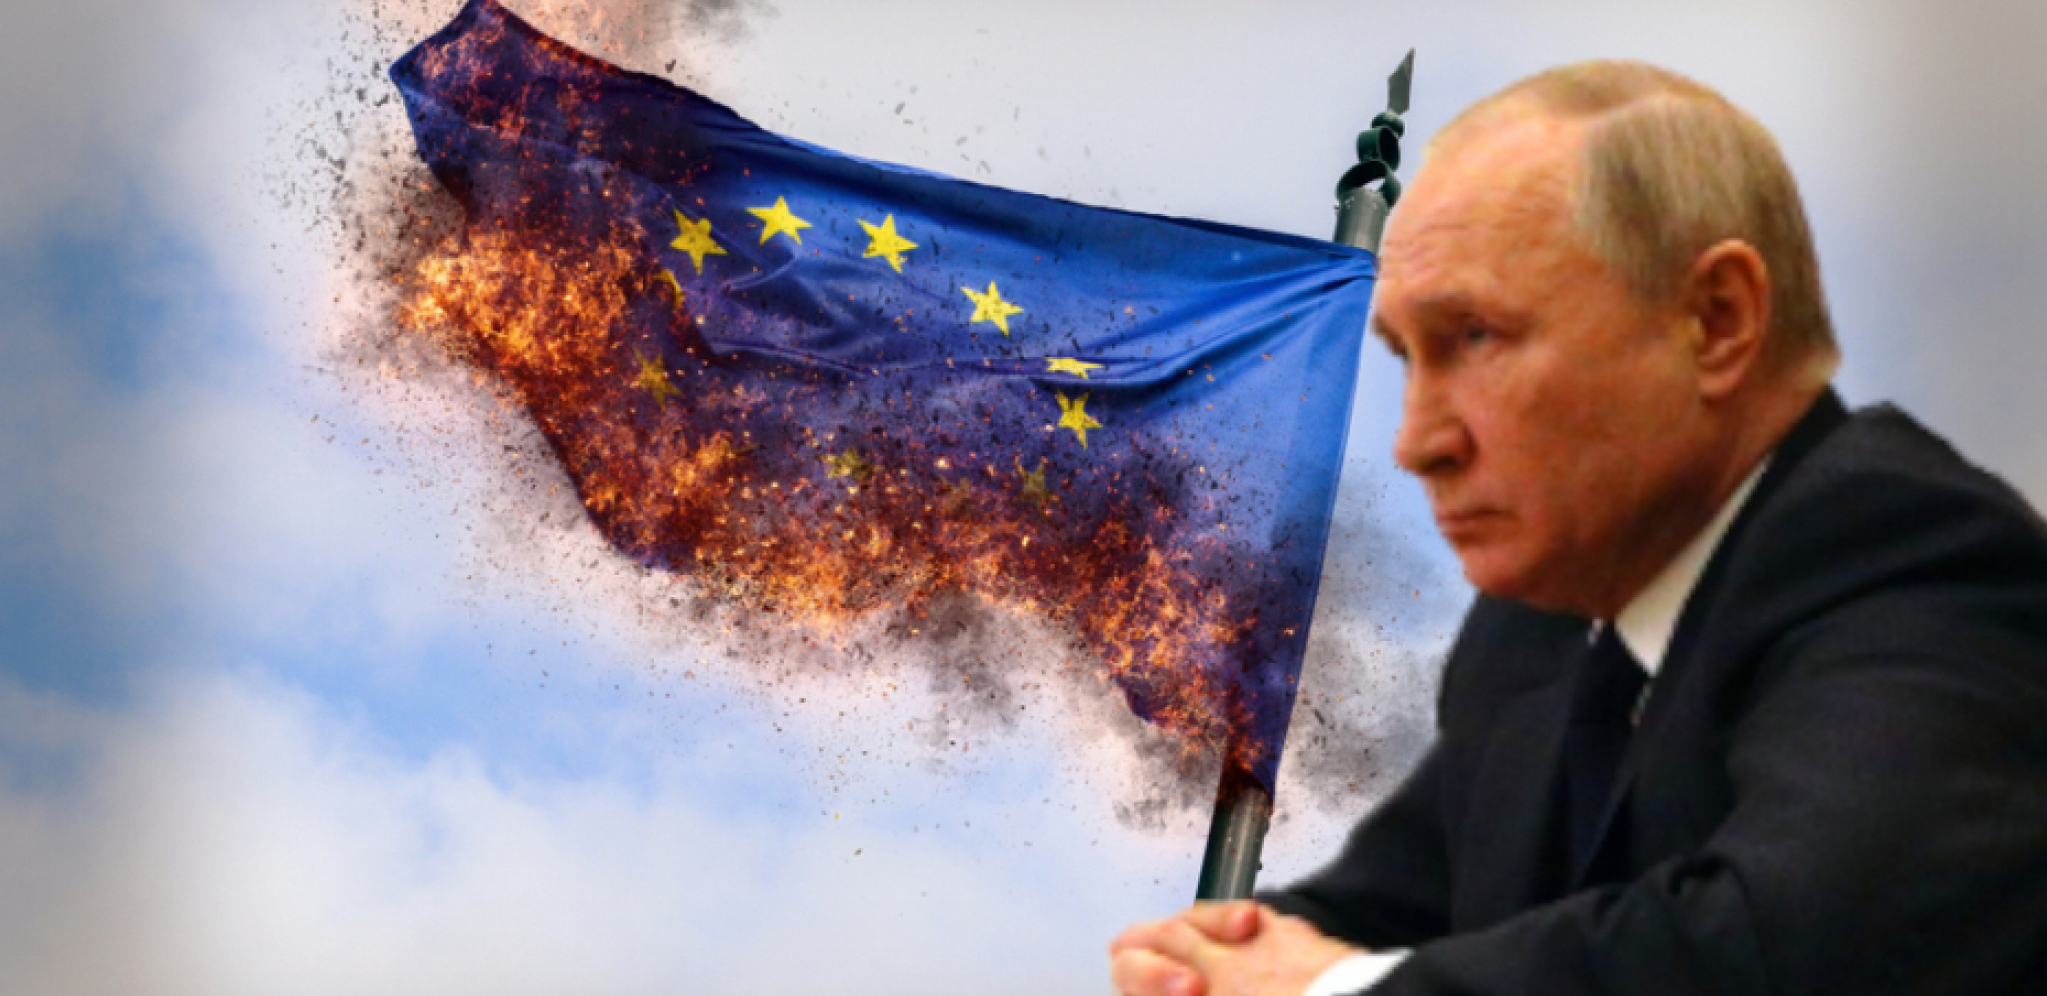 NEMOGUĆA MISIJA Evropa protiv ruskih energenata